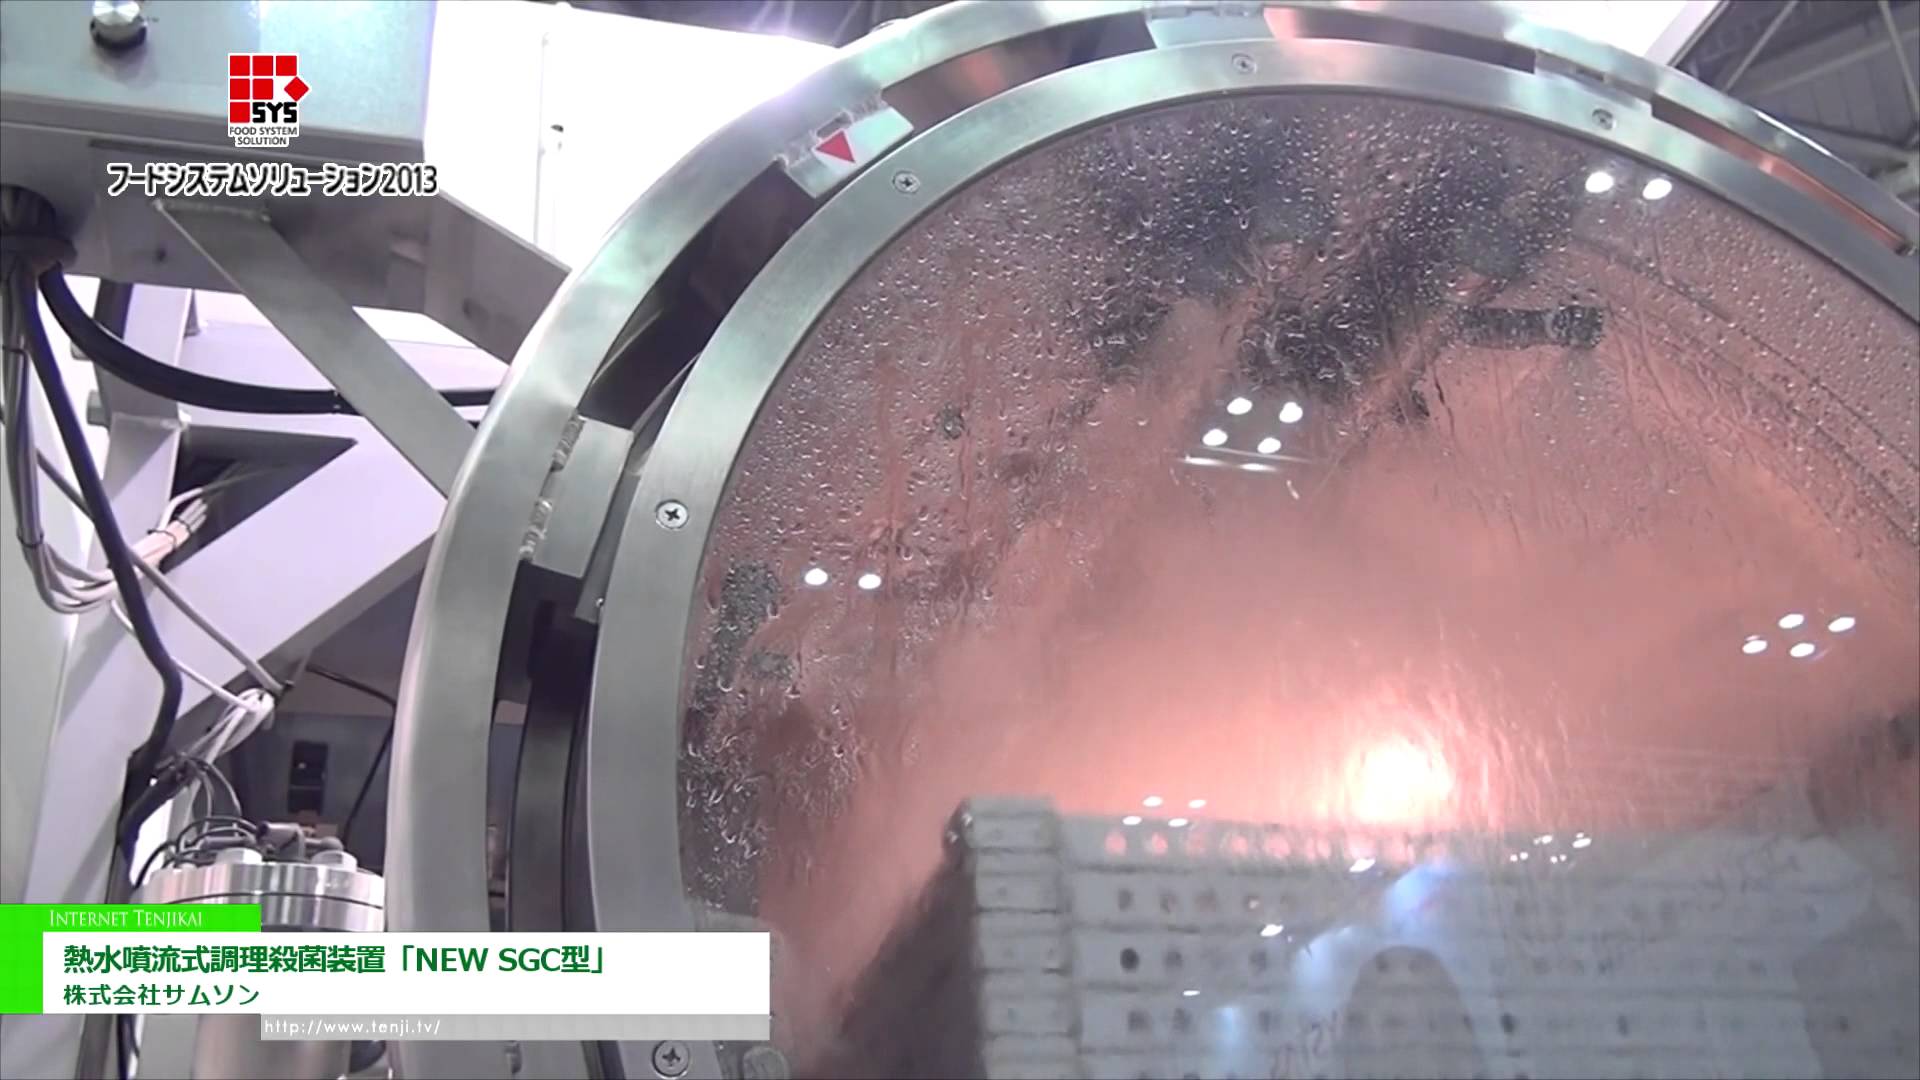 [フードシステムソリューション2013] 熱水噴流式調理殺菌装置「NEW SGC型」 - 株式会社サムソン